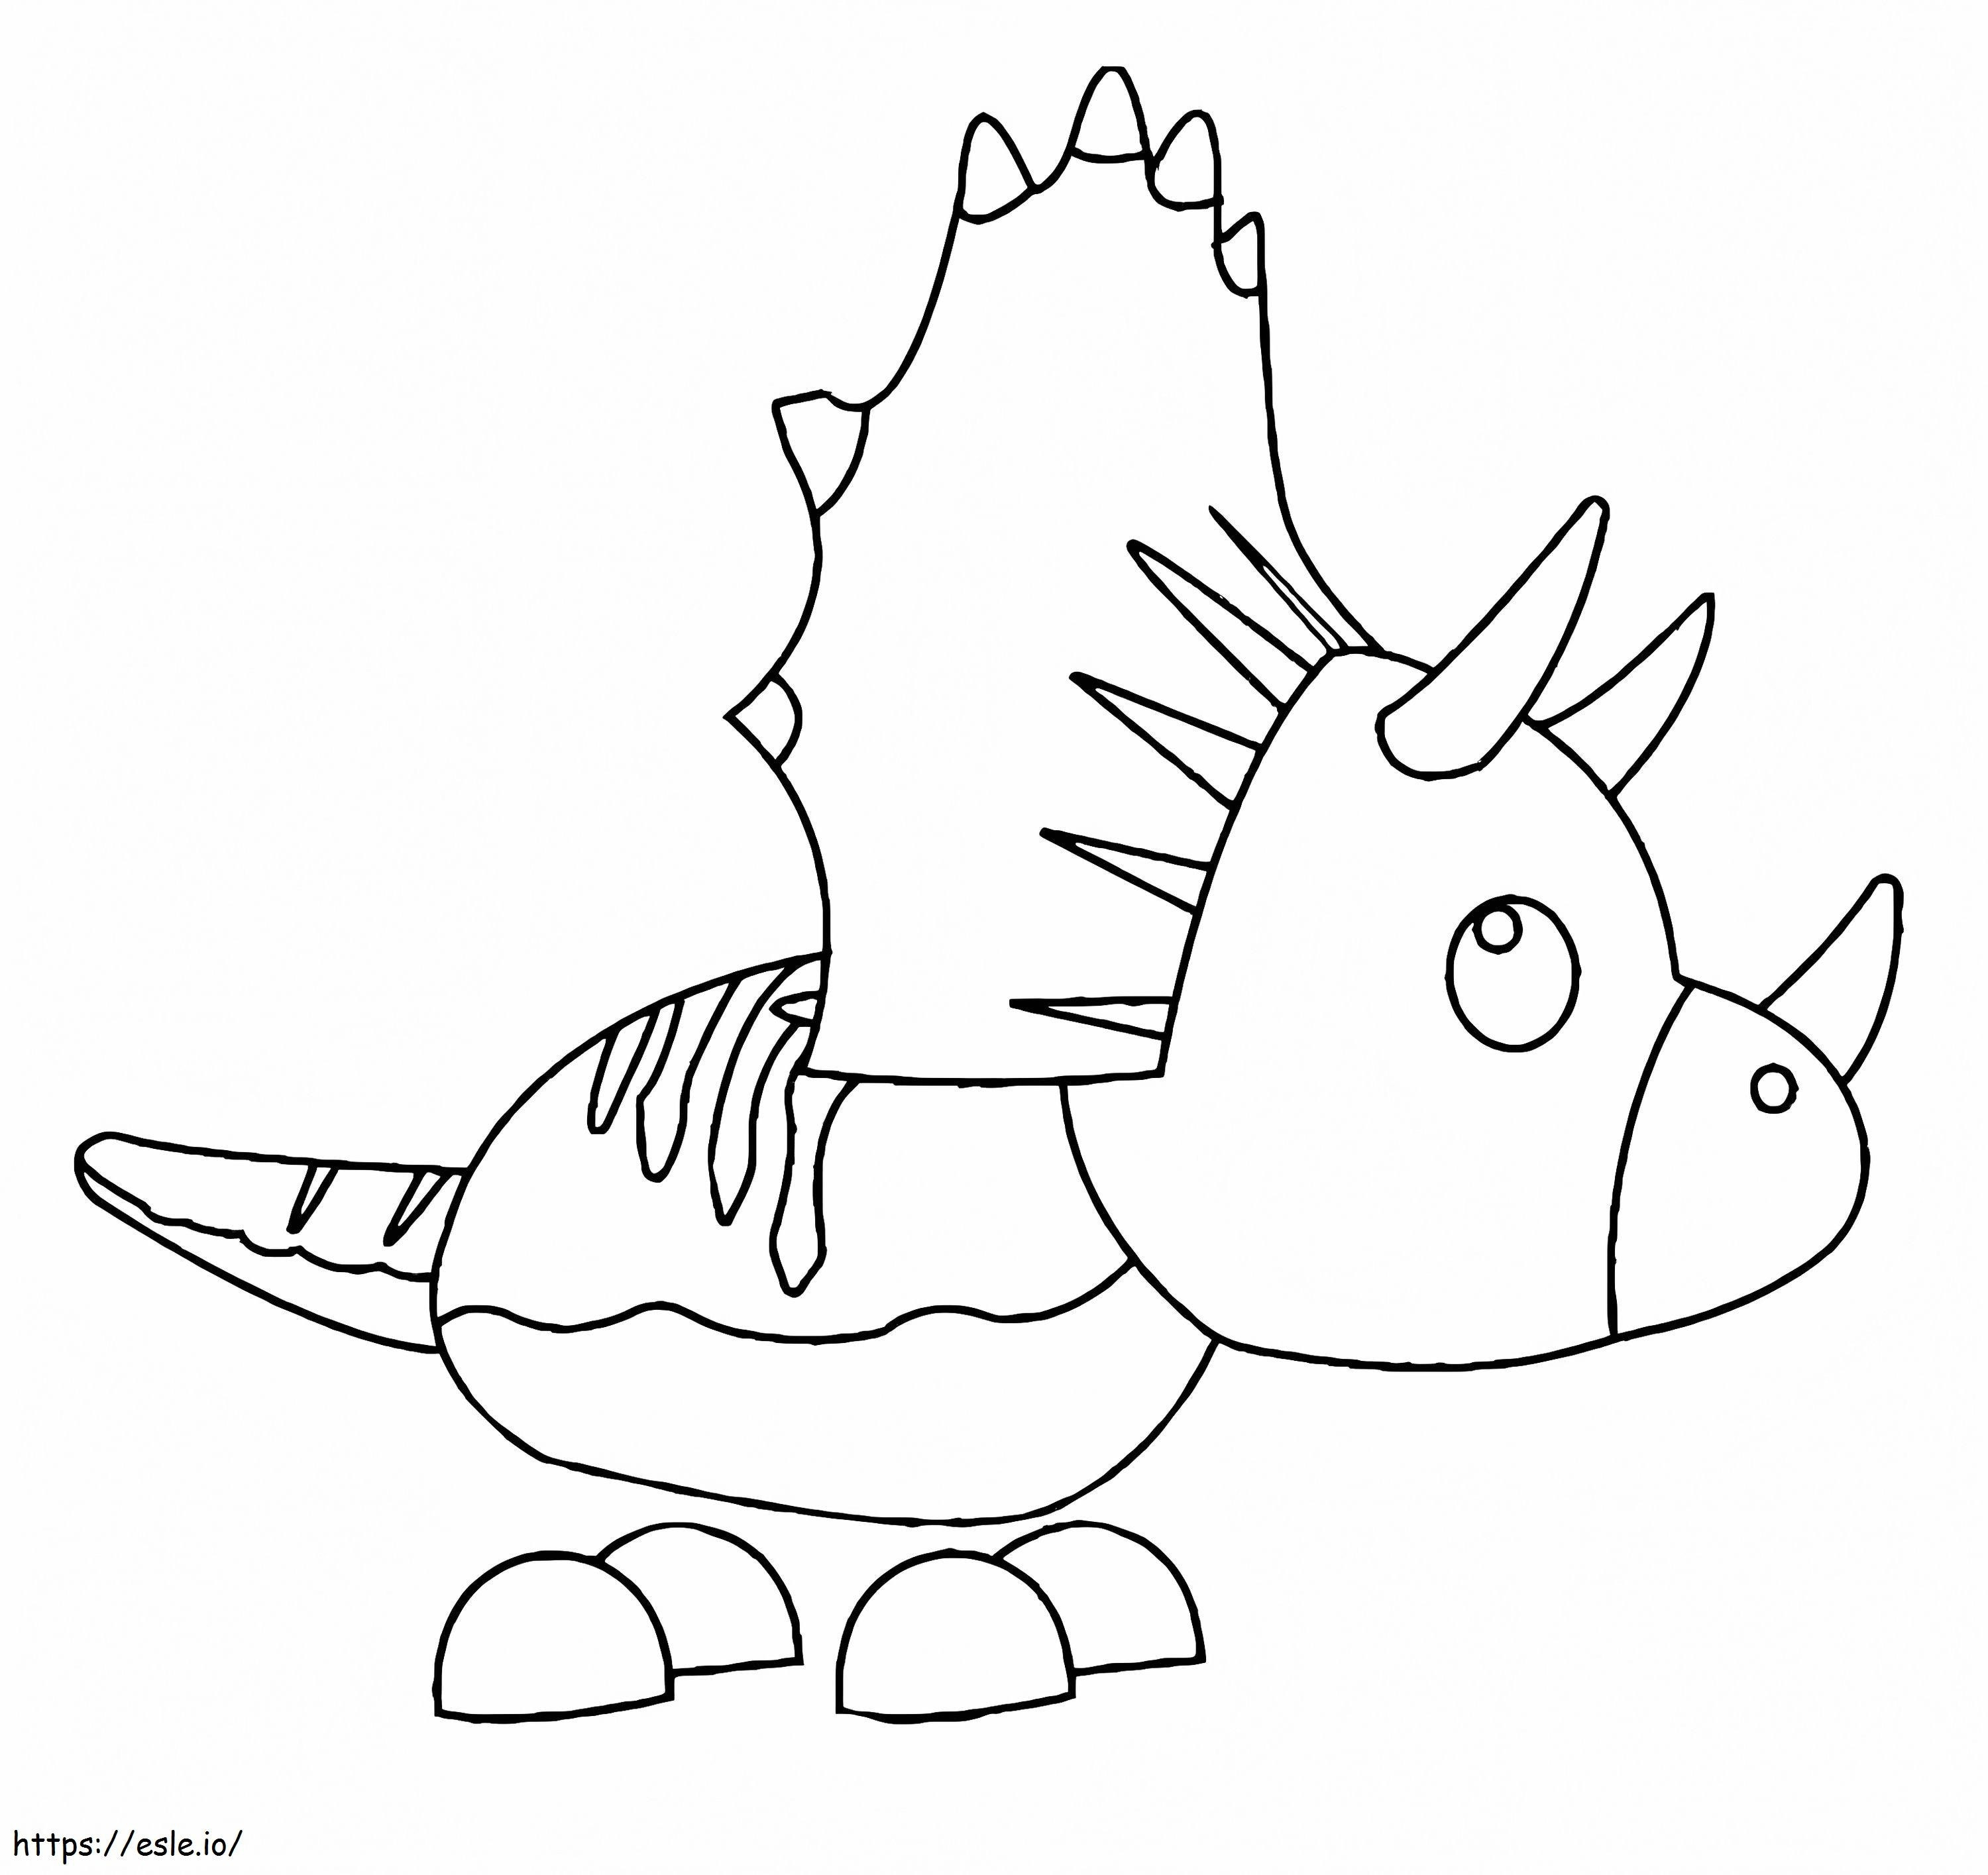 Adoptiere mich als Haustier Triceratops ausmalbilder